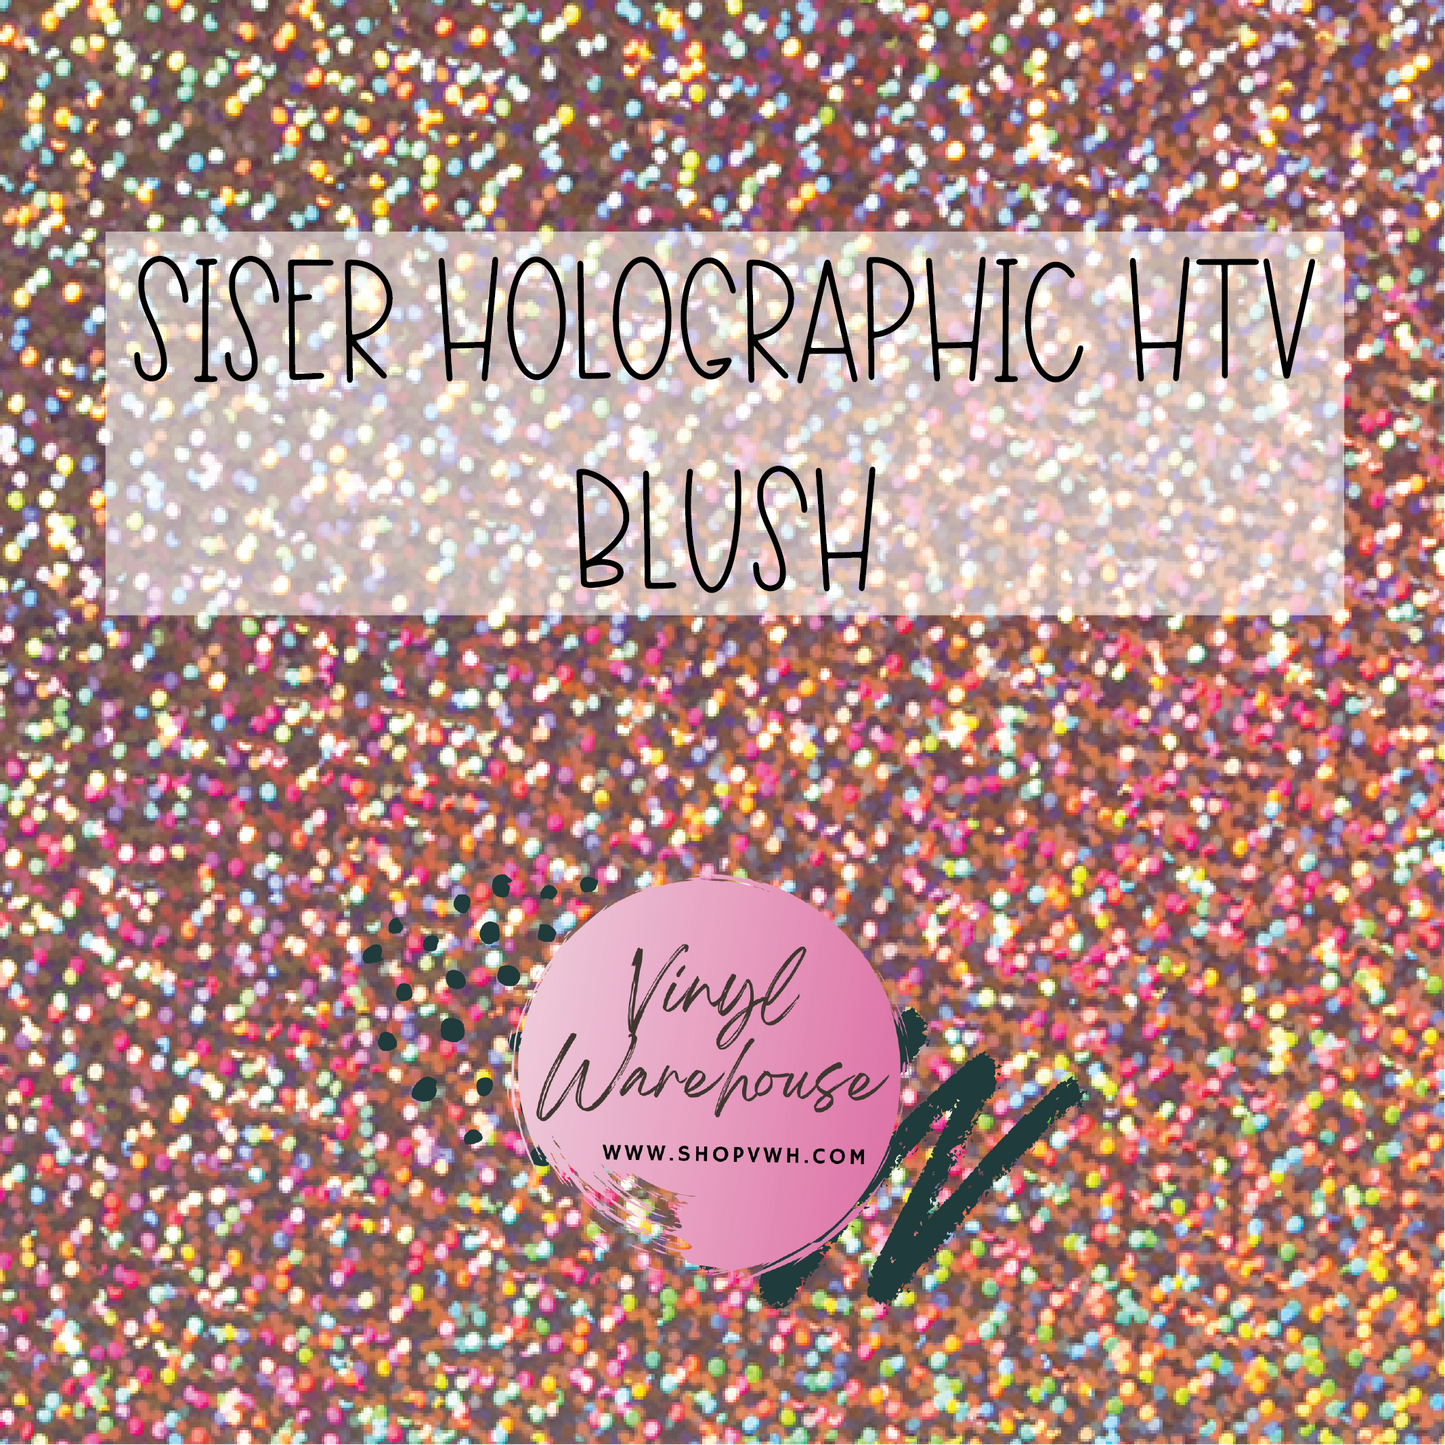 Siser Holographic HTV - Blush